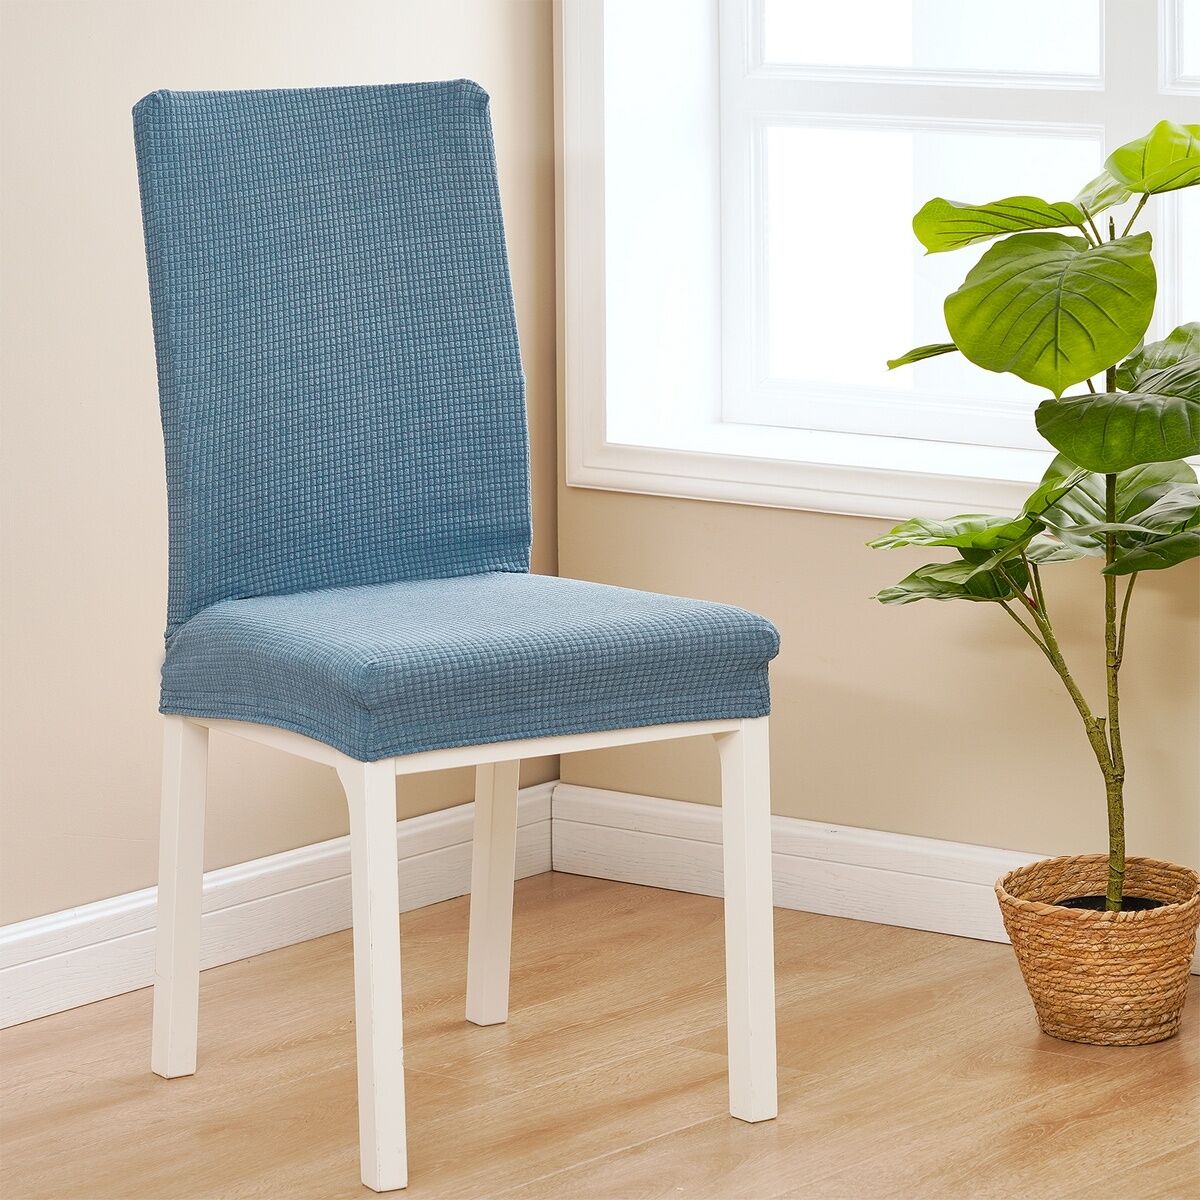 4Home Elastyczny wodoodporny pokrowiec na krzesłoMagic clean niebieski, 45 - 50 cm, zestaw 2 szt.